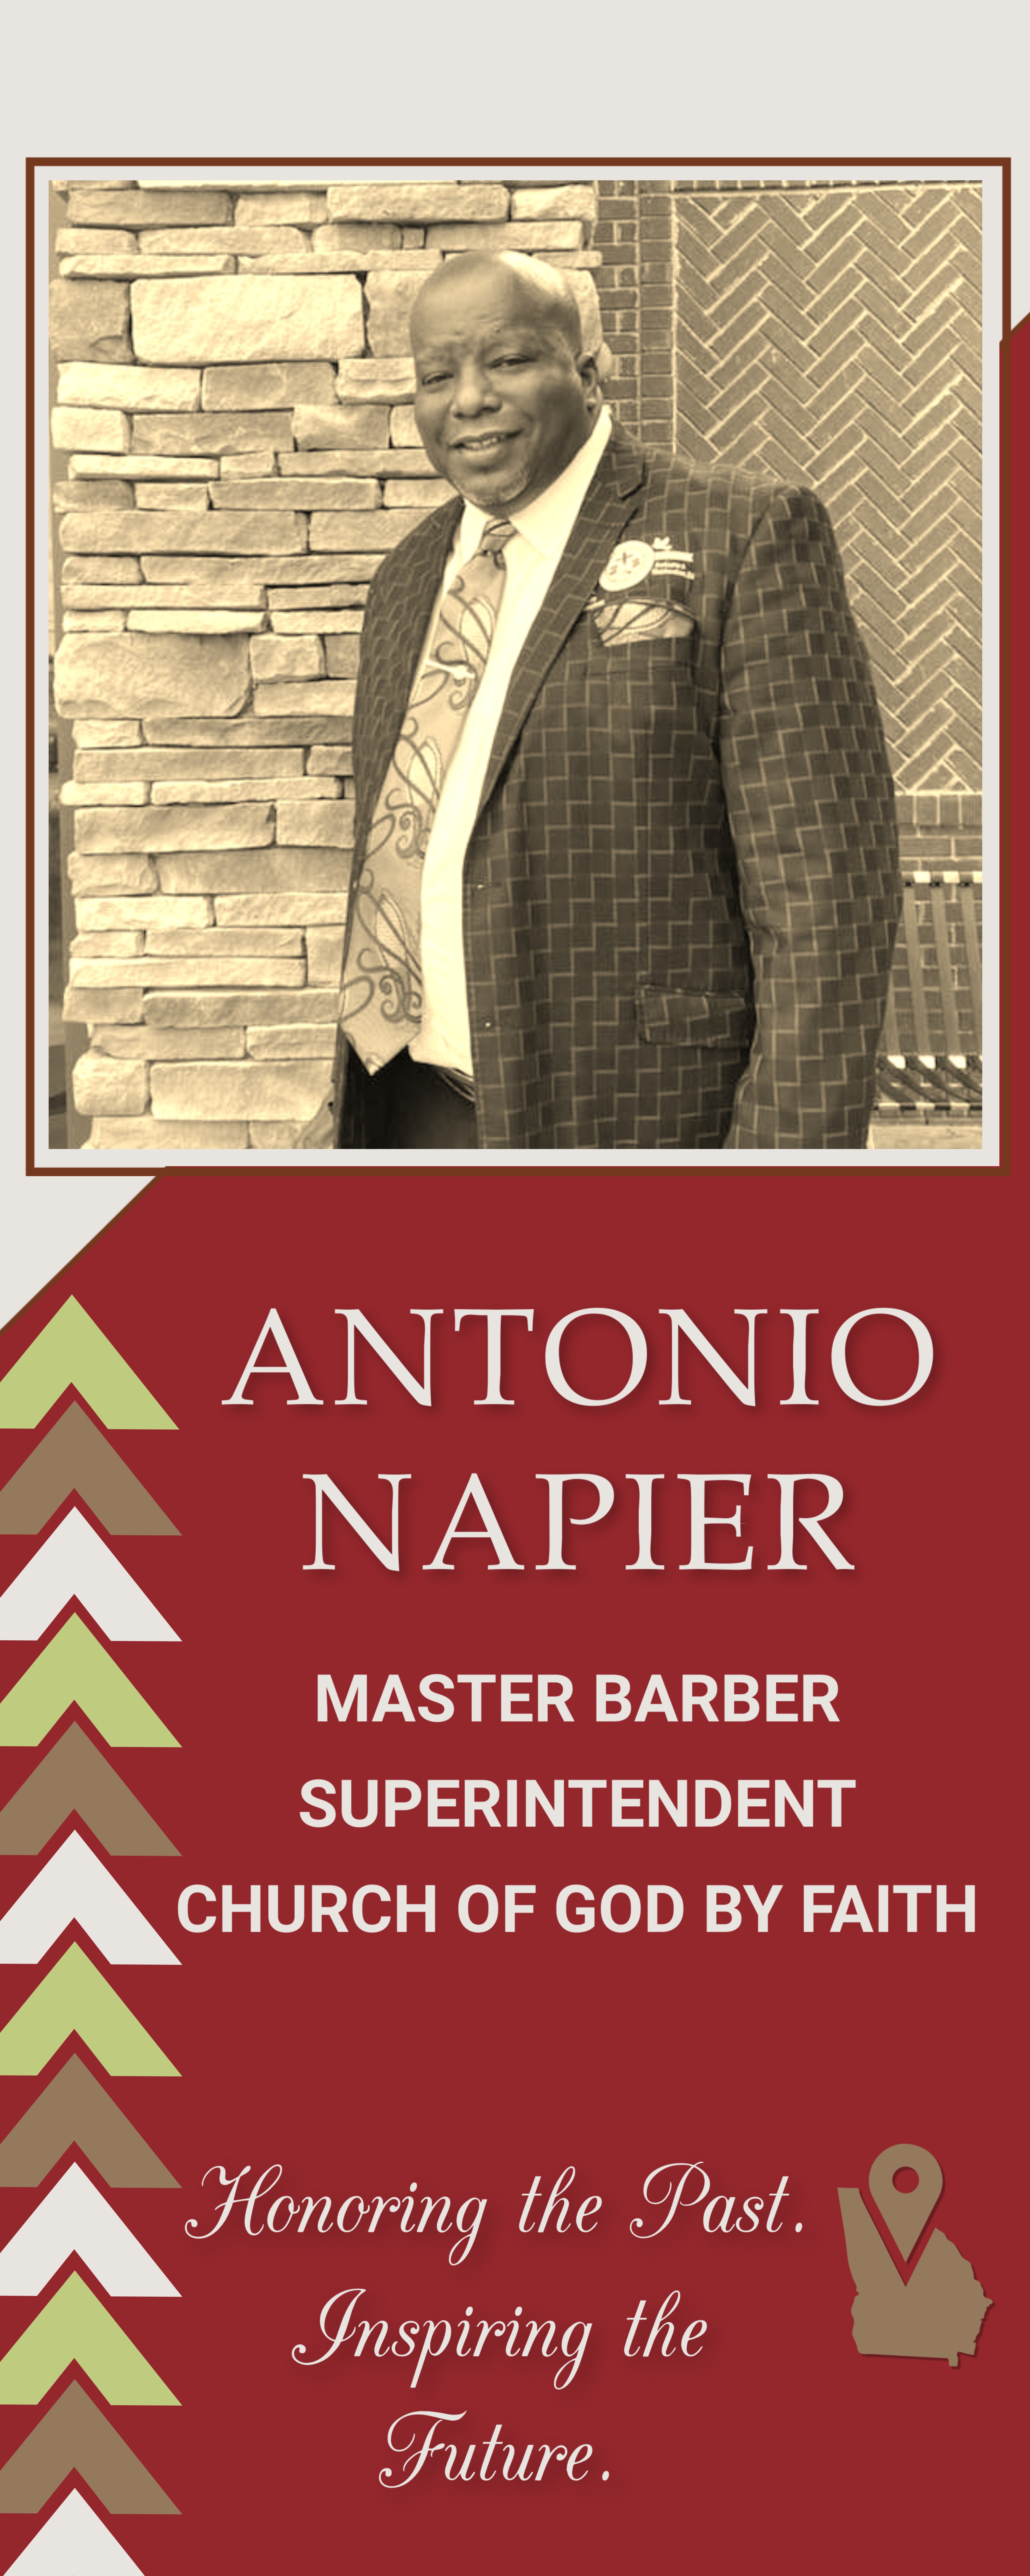 Antonio Napier